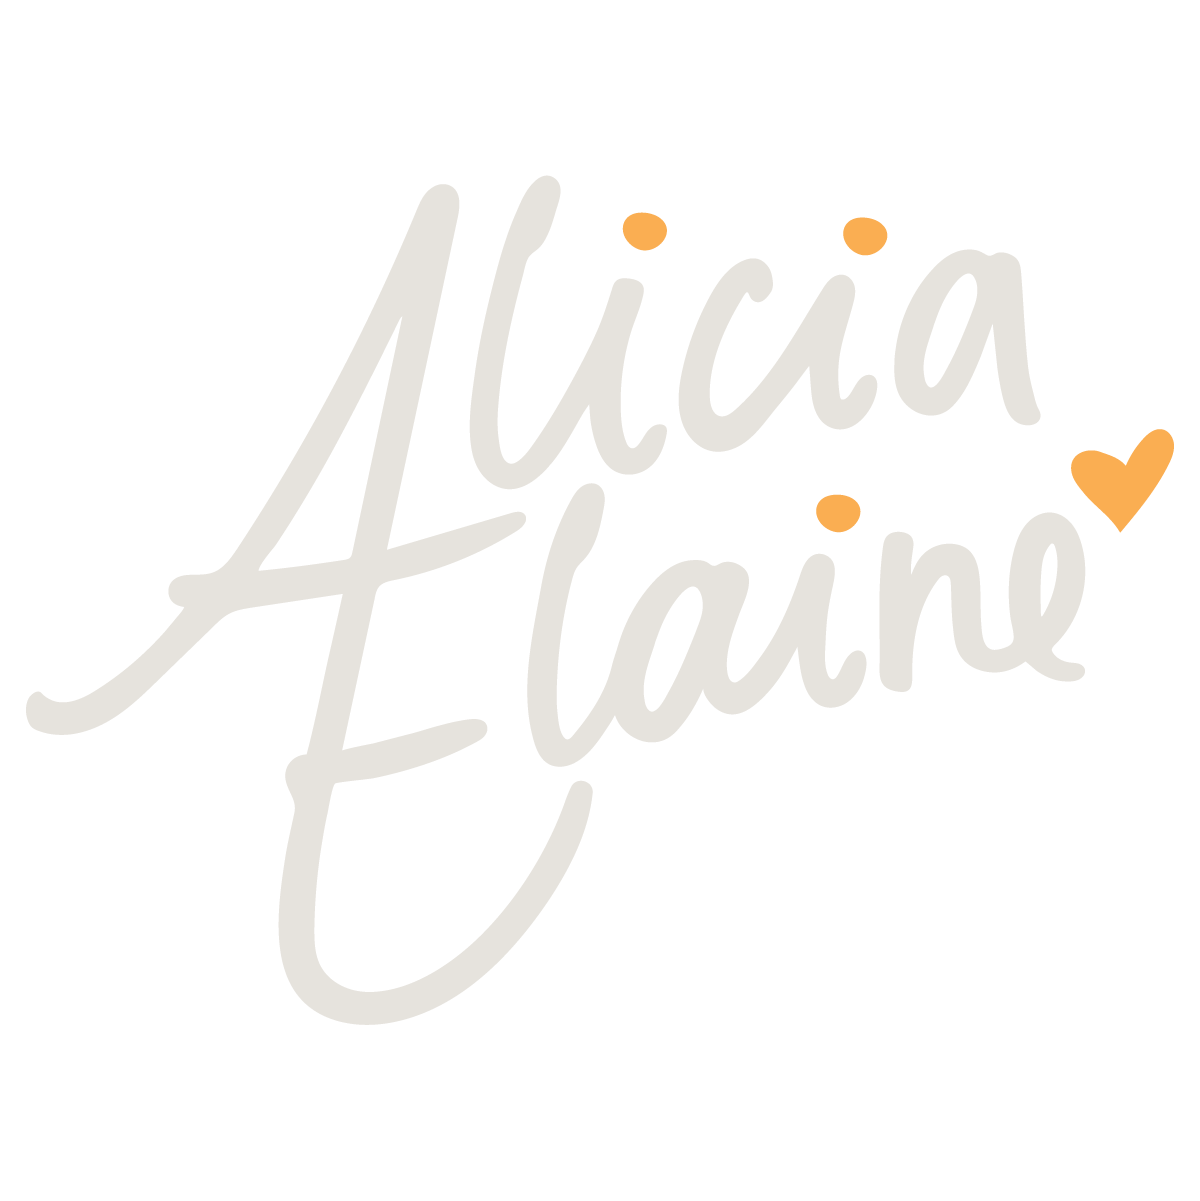 Alicia Elaine